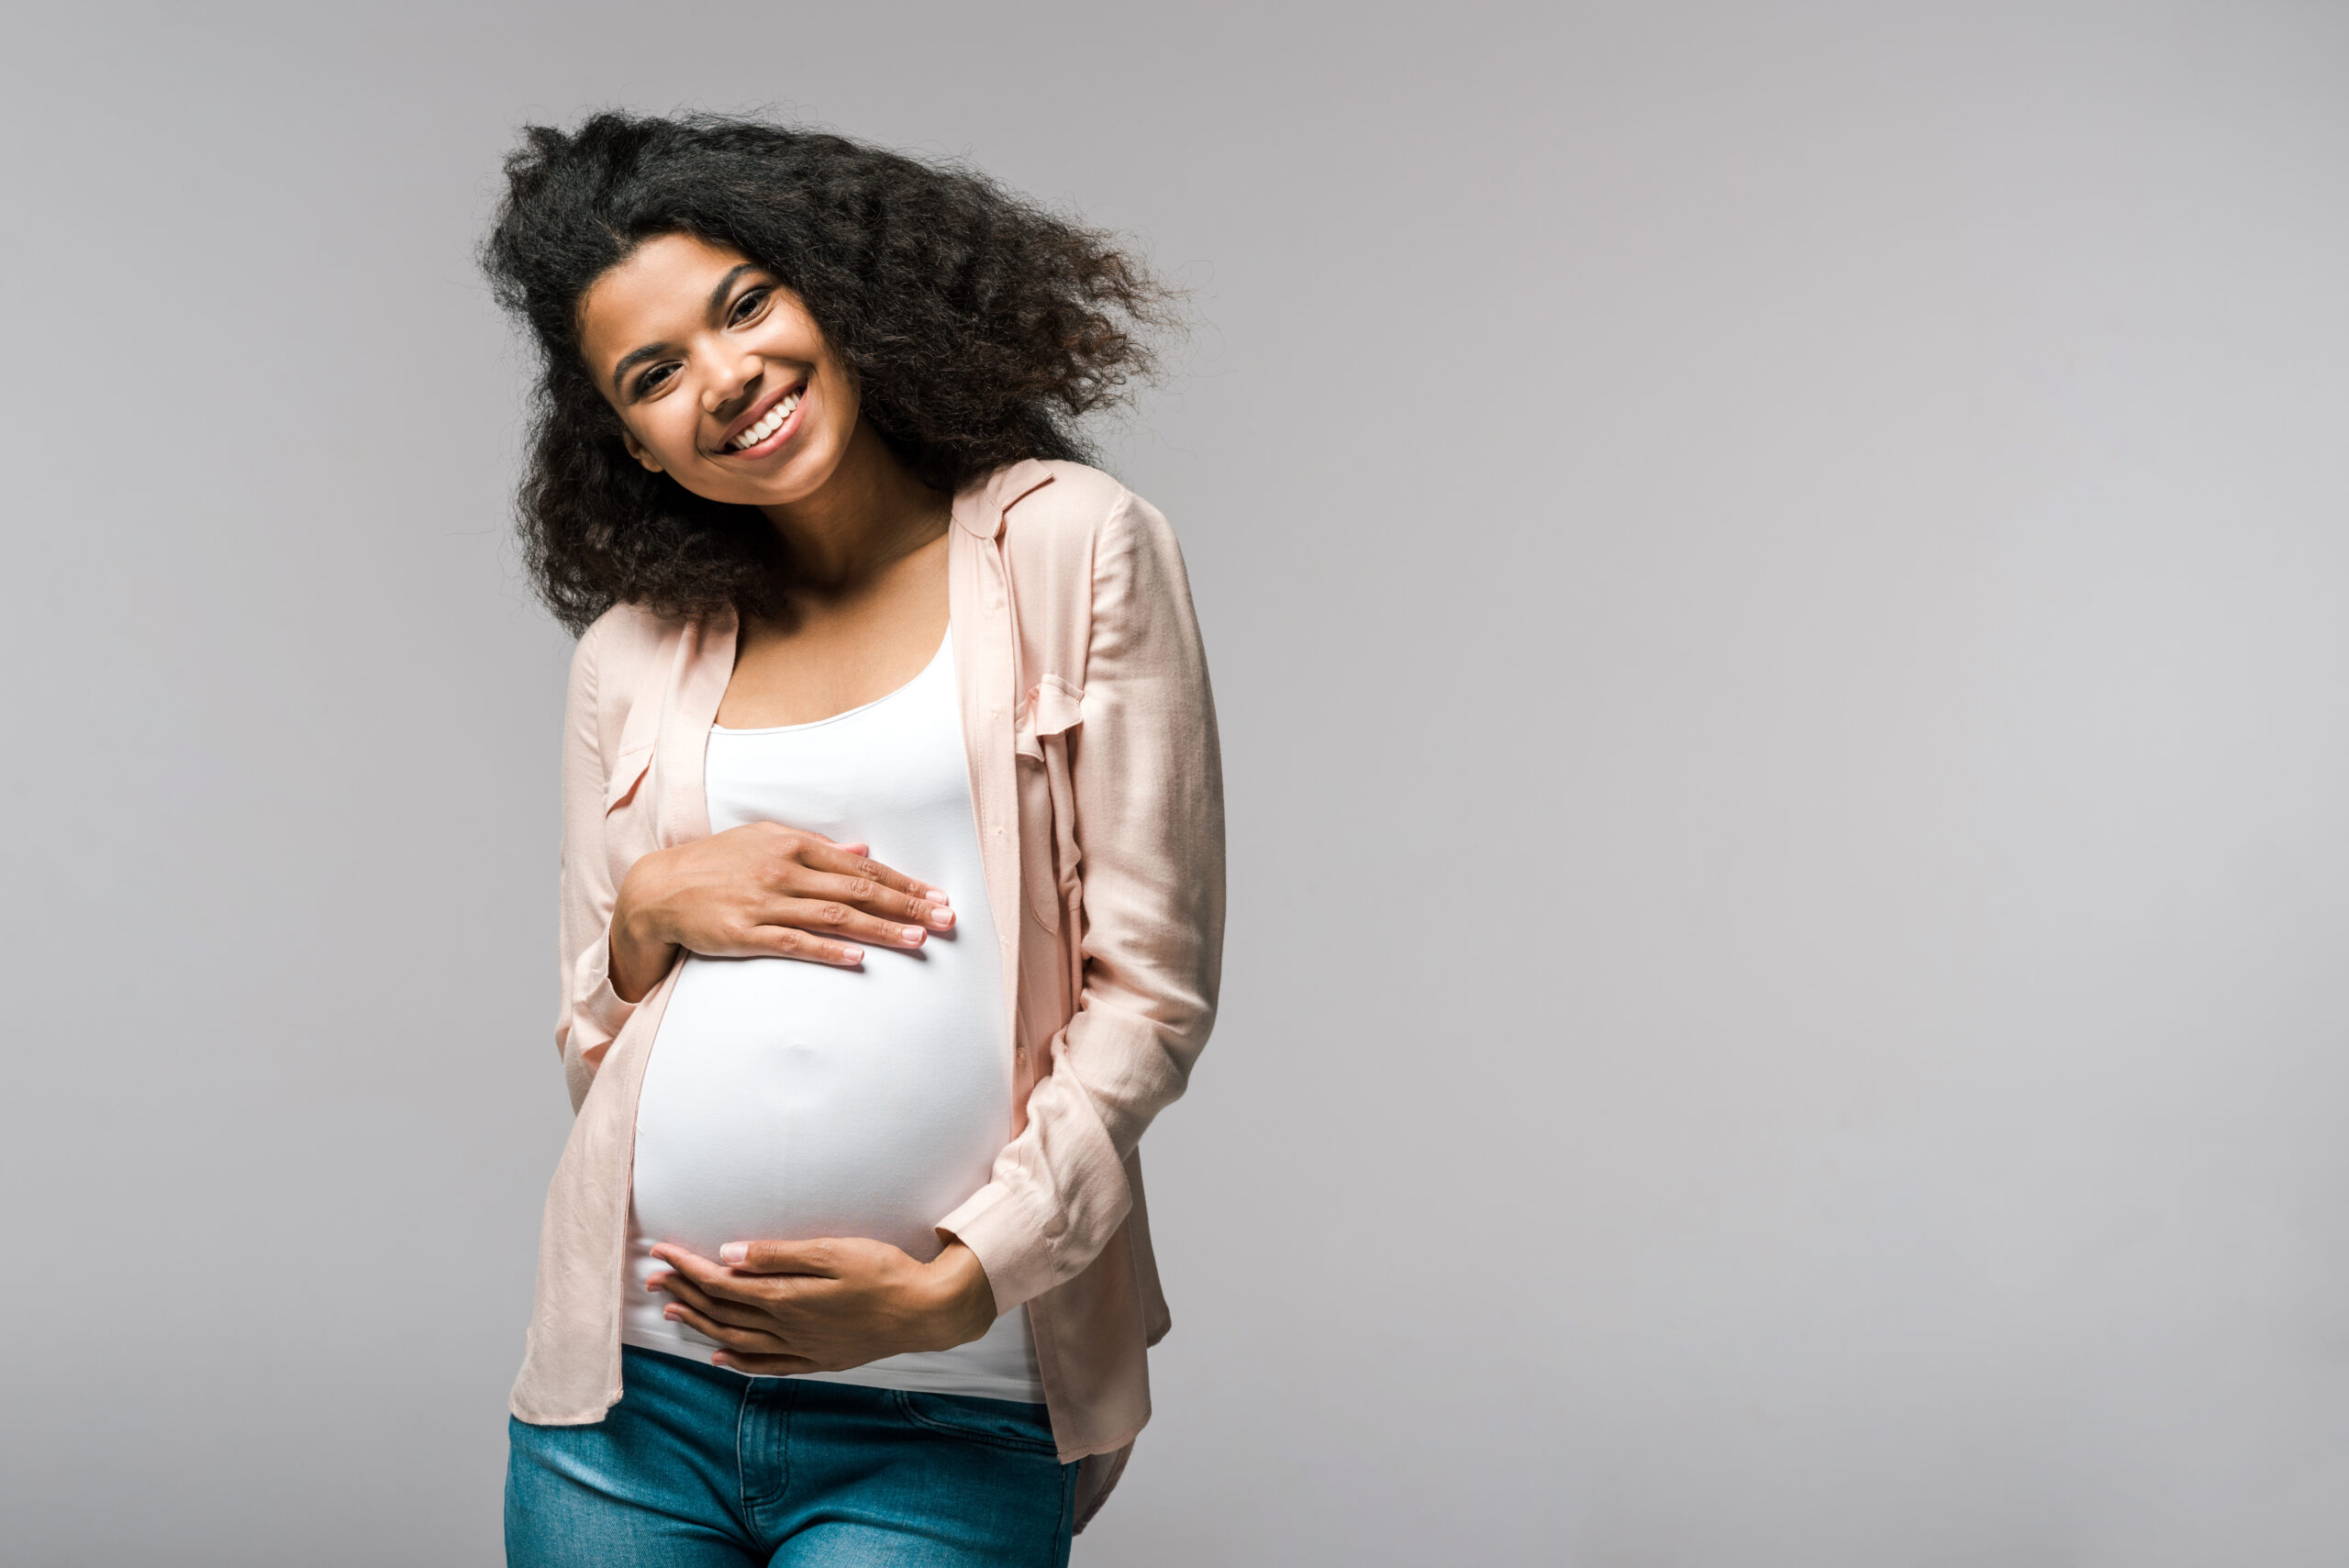 Femme enceinte souriante tenant son ventre, vêtue d'un haut blanc et d'un cardigan léger.